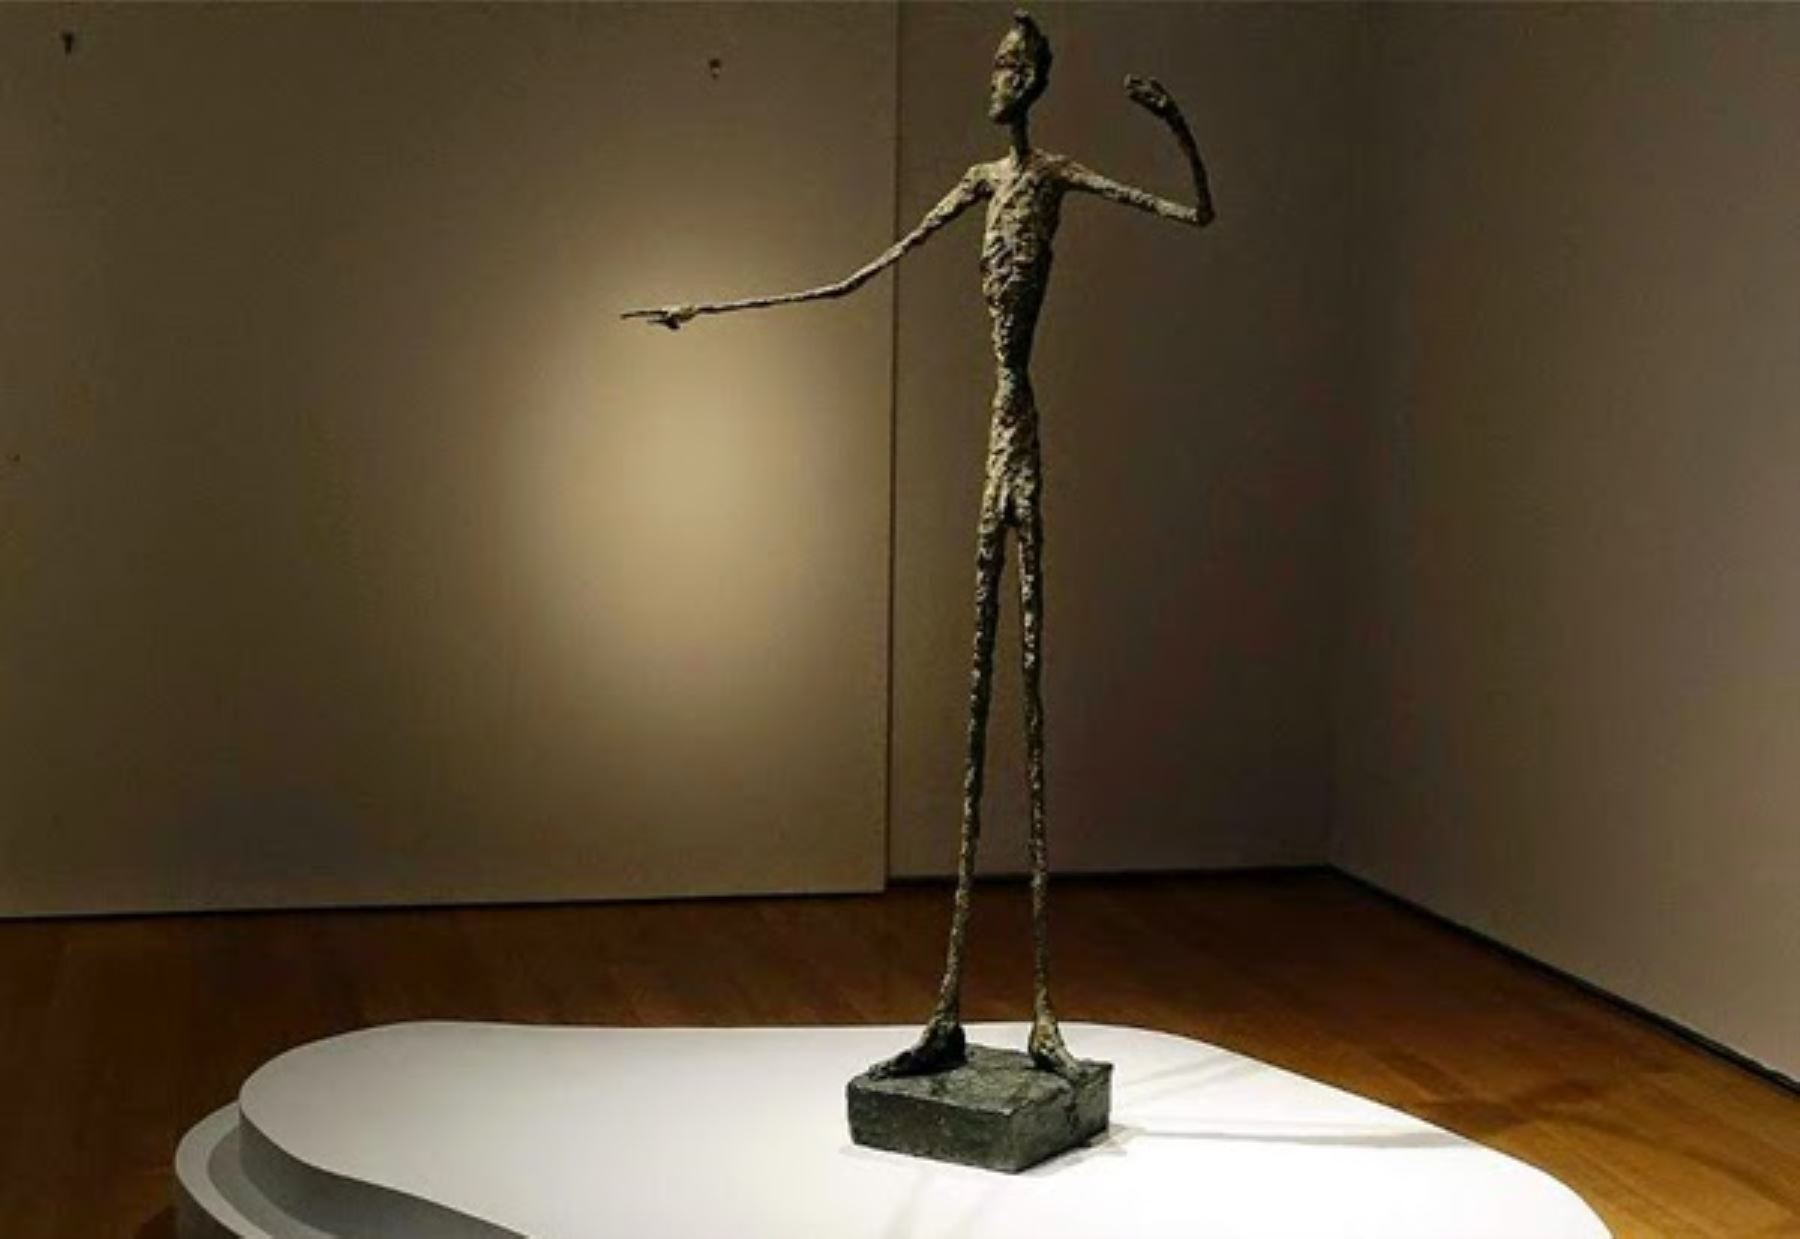 4- Alberto Giacometti, "El hombre que apunta", escultura vendida por 141,28 millones de dólares el 11 de mayo de 2015 en Christie